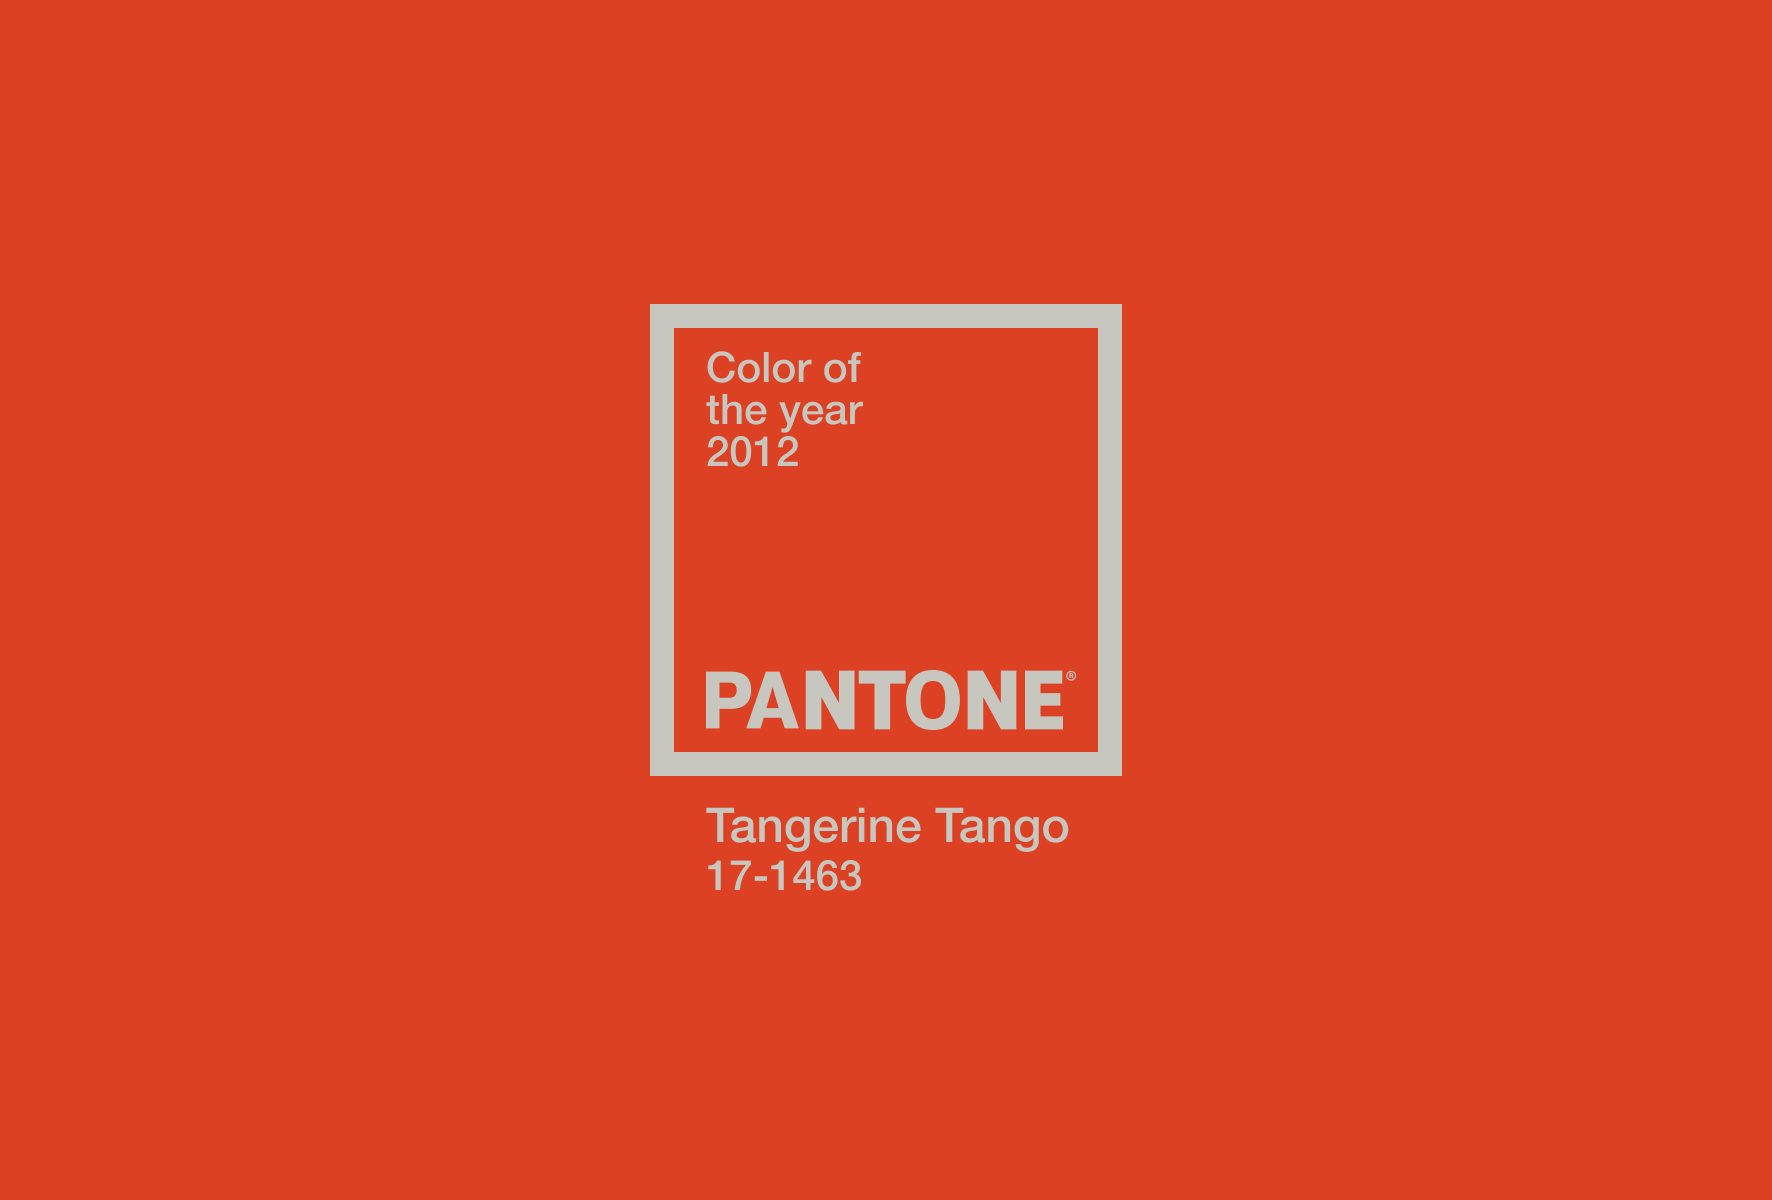 Pantone aasta värv 2012 – Tangerine Tango